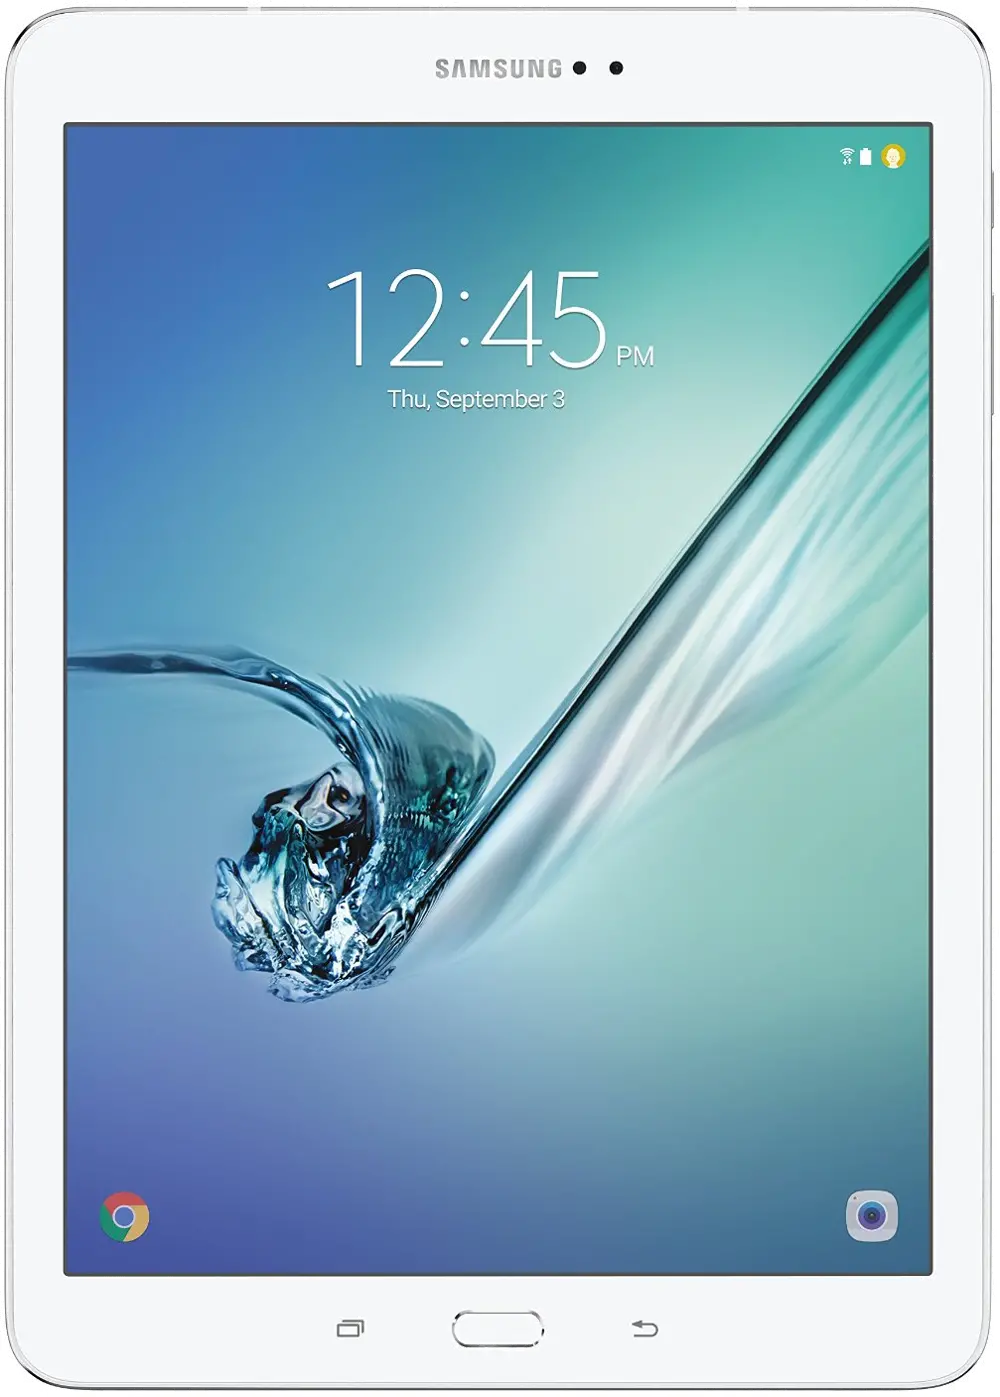 SM-T813NZWEXAR Samsung Galaxy Tab S2 9.7 Inch - 32GB - White-1